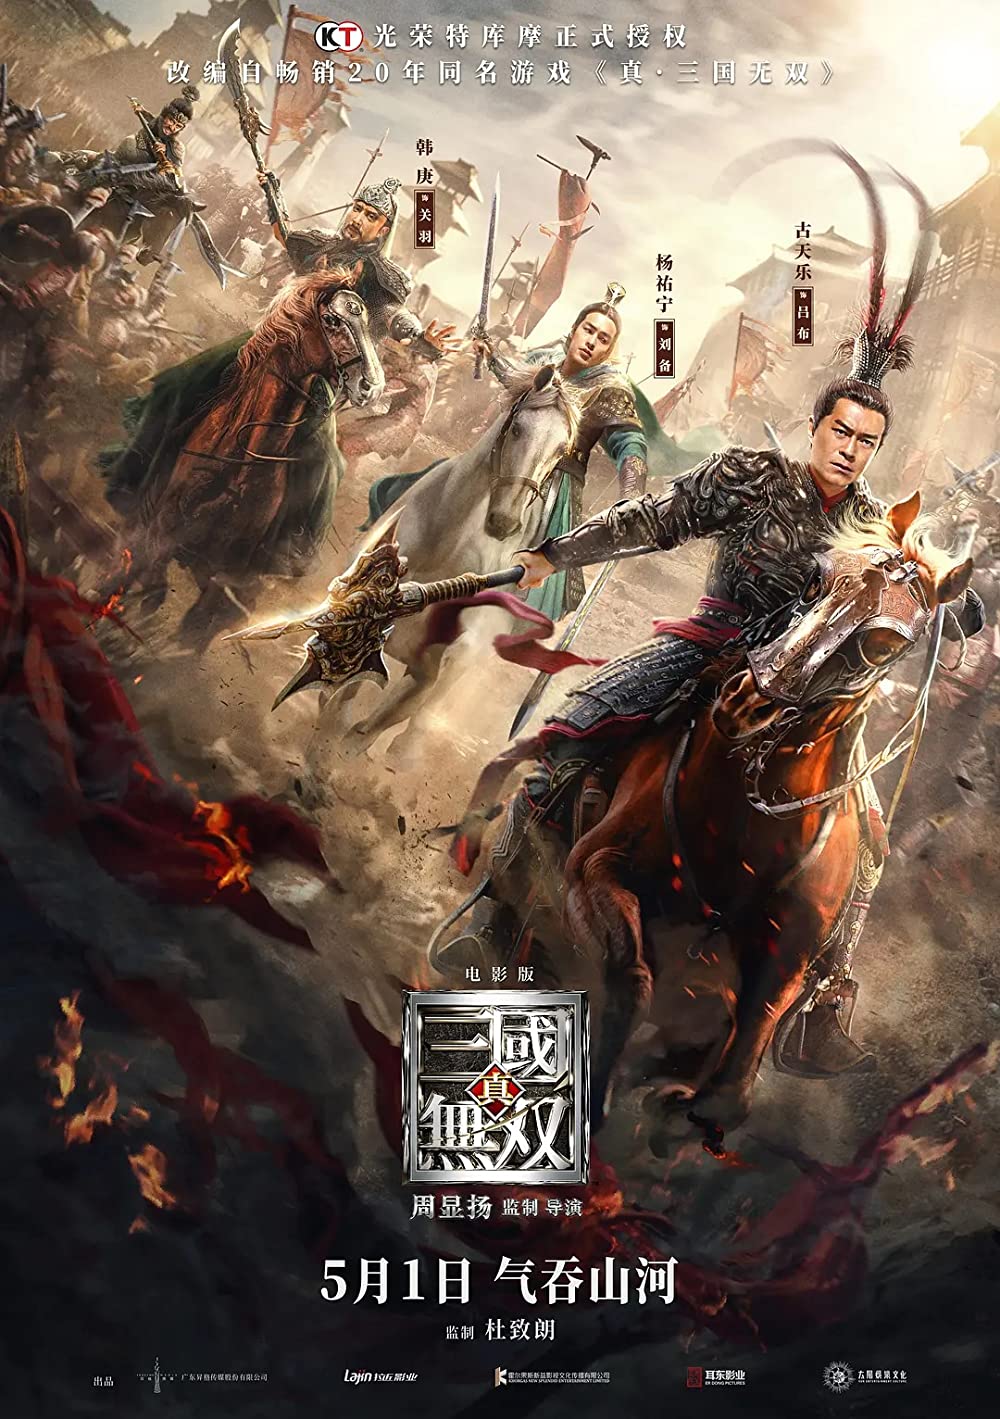 ดูหนังออนไลน์ Dynasty Warriors (2021) ไดนาสตี้วอริเออร์ มหาสงครามขุนศึกสามก๊ก